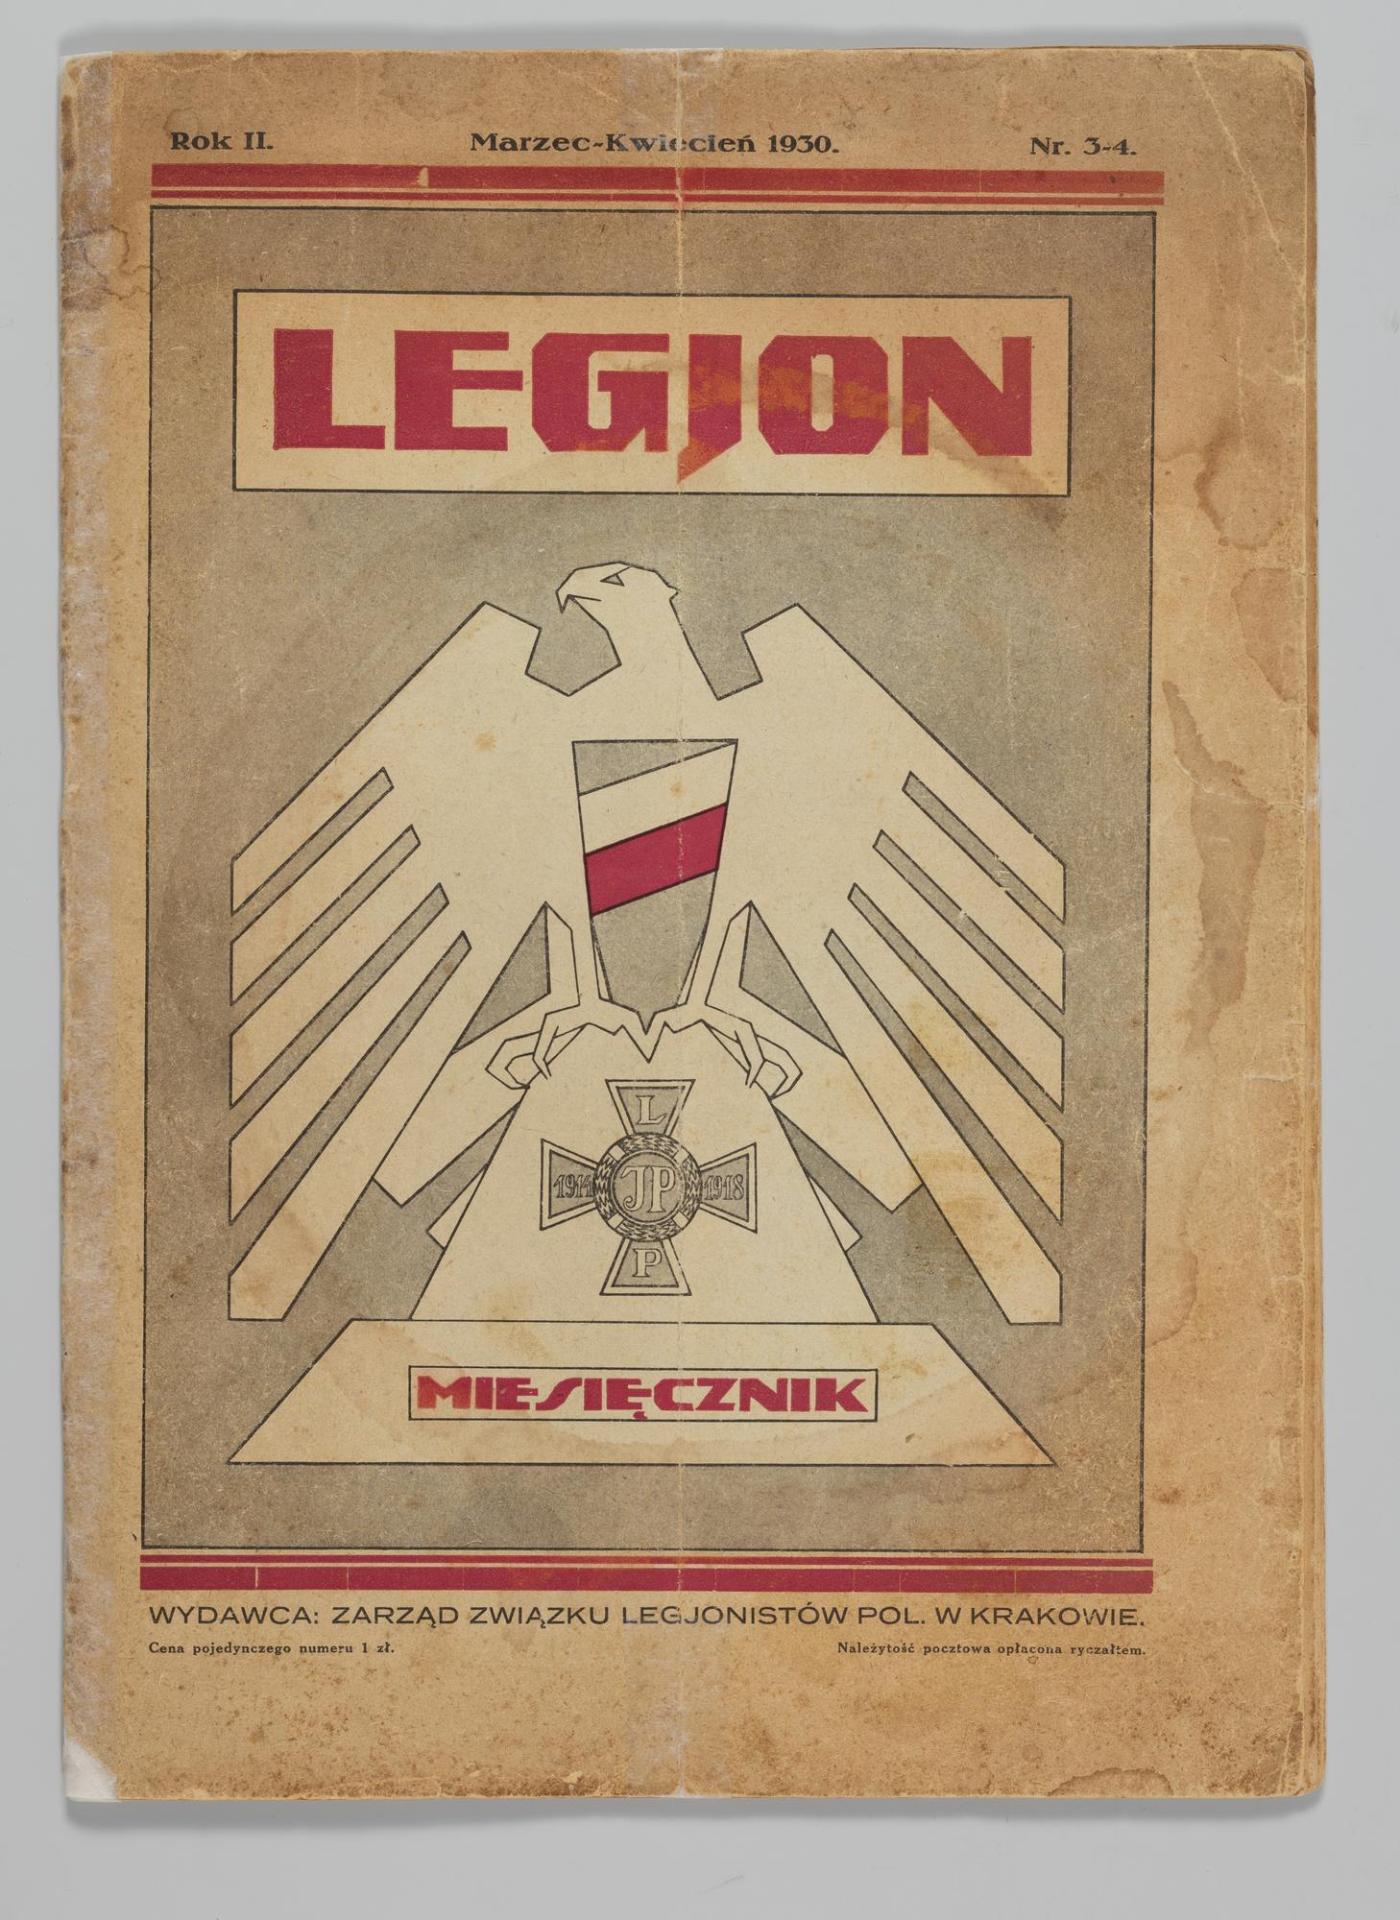 
<span>Legjon : czasopismo Związku Legionistów Polskich w Krakowie, nr 3-4</span>
